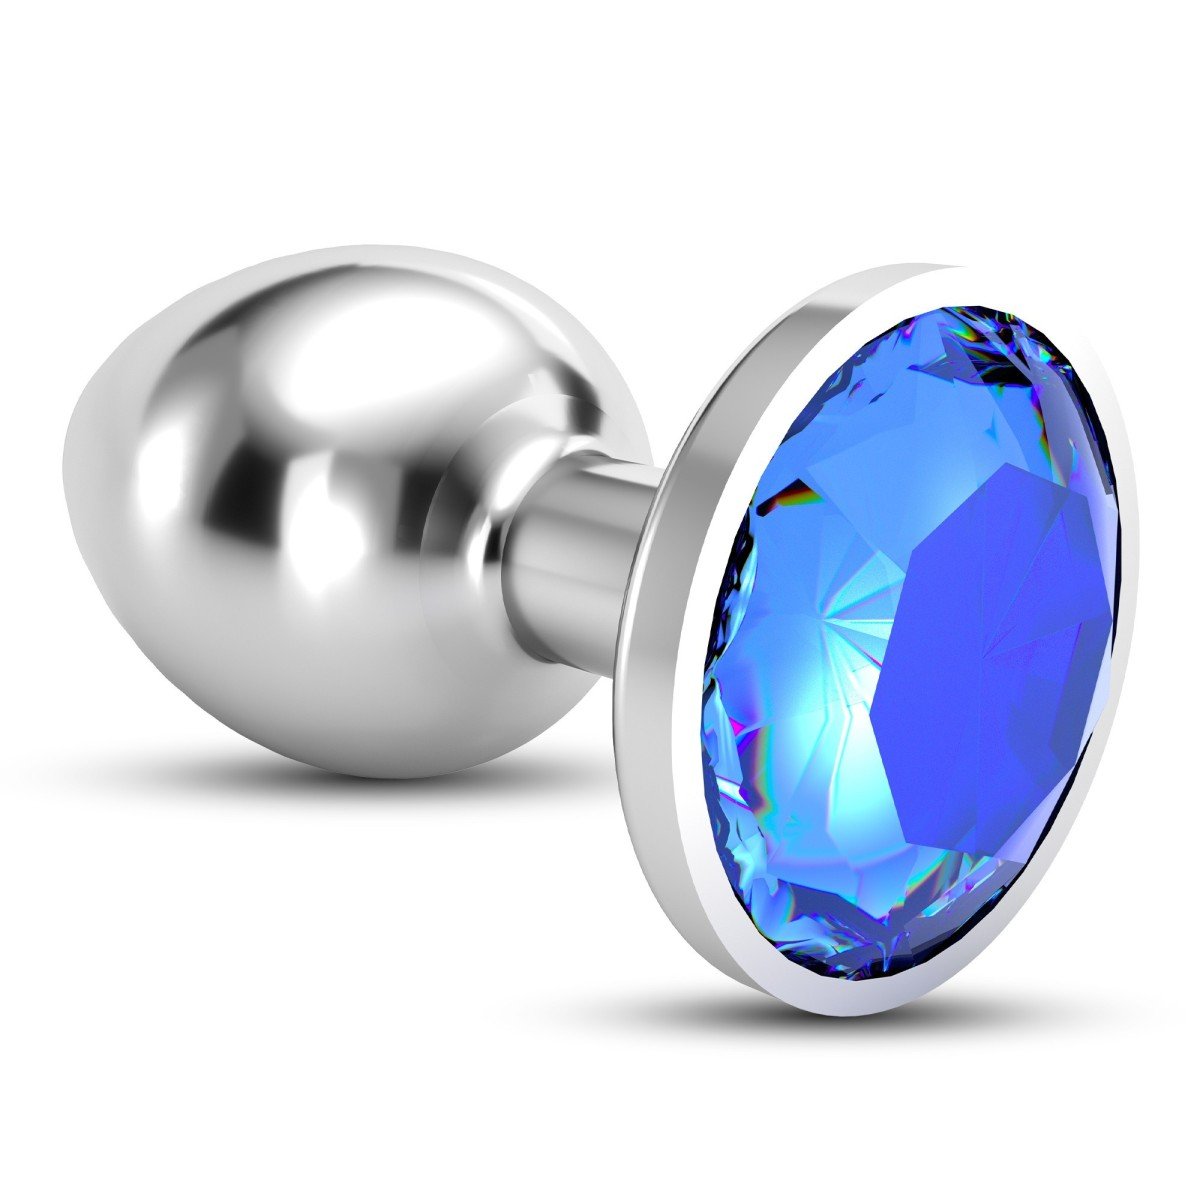 Análny šperk Crushious Bijou stredný modrý, kovový análny kolík 8,2 x 3,4 cm